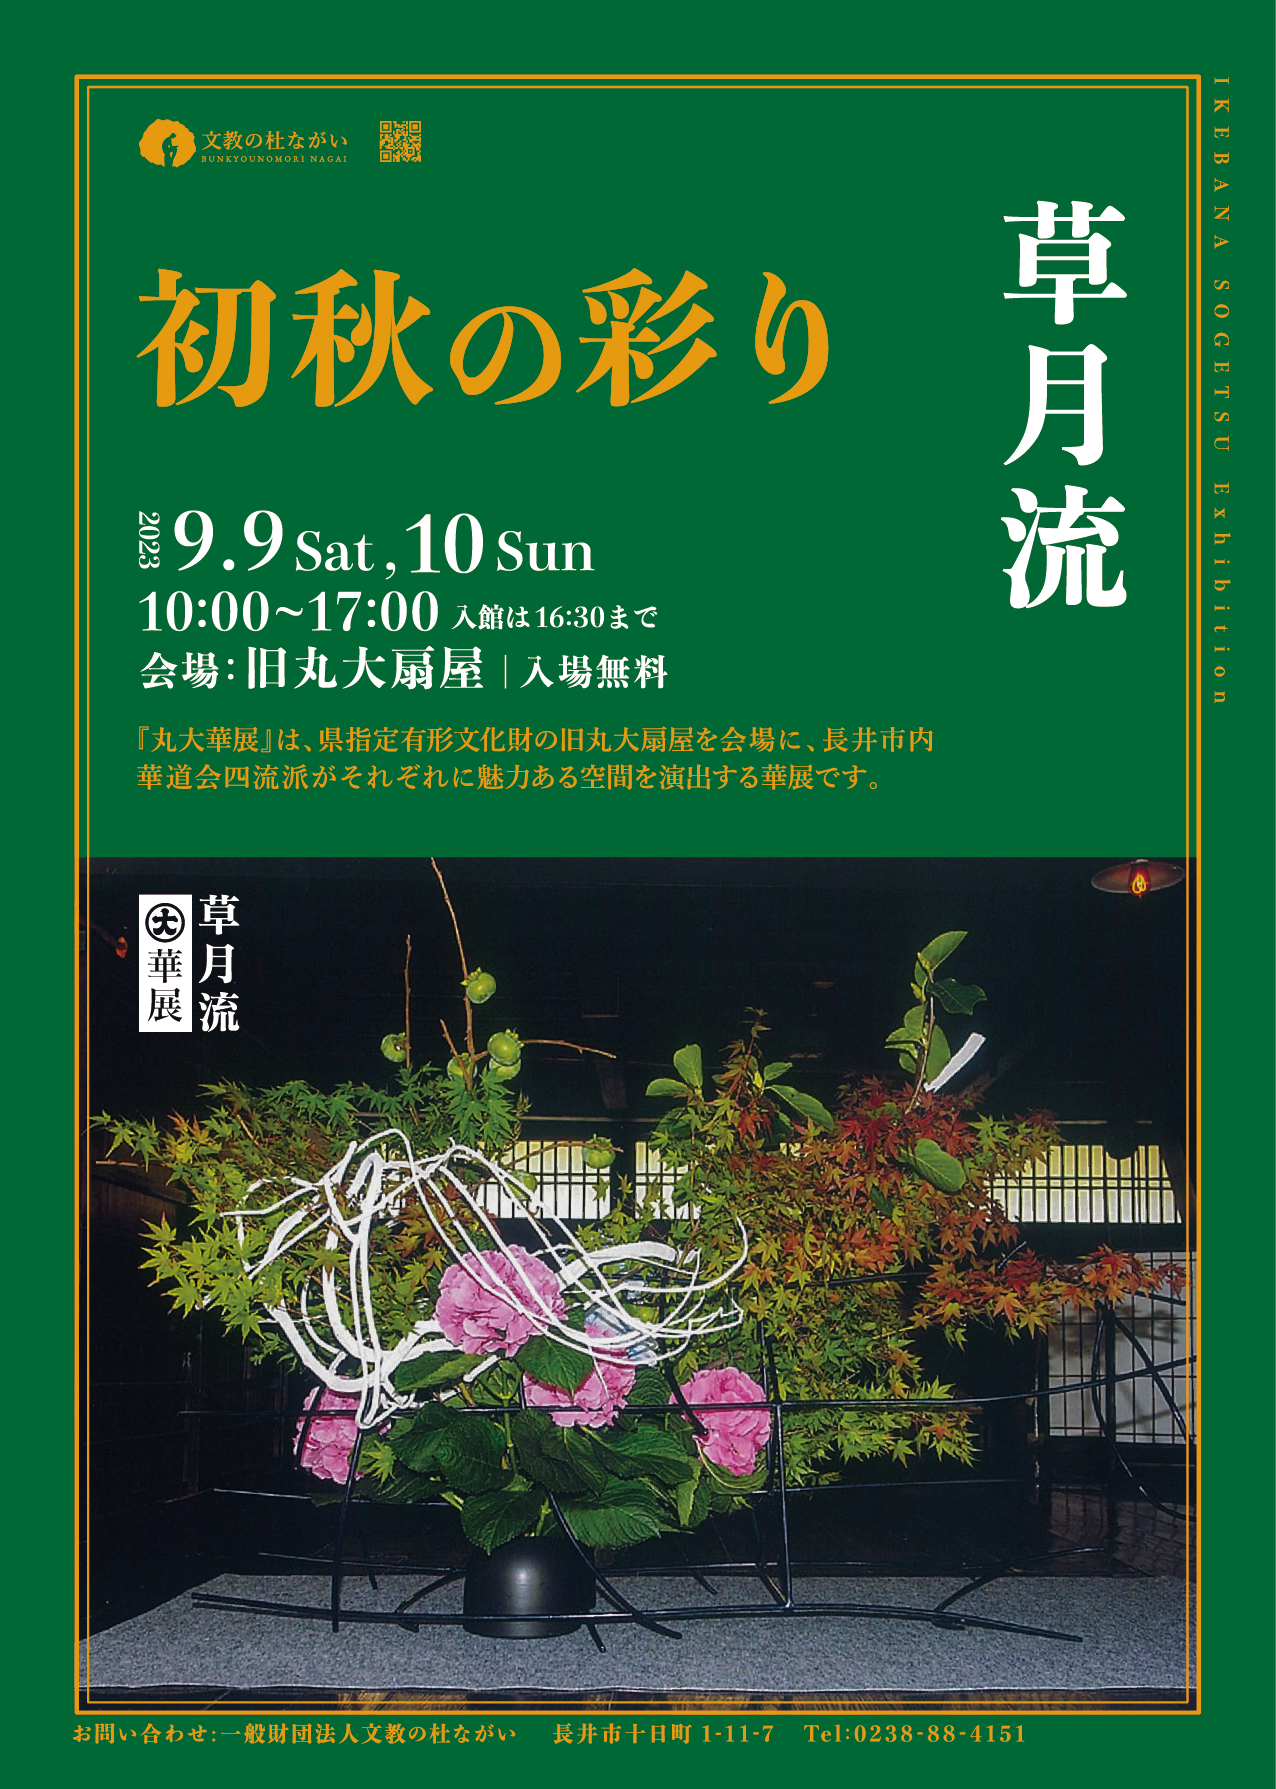 【山形イベント情報】9/9〜10 丸大華展 「草月流 初秋の彩り」が開催されます。(長井市)